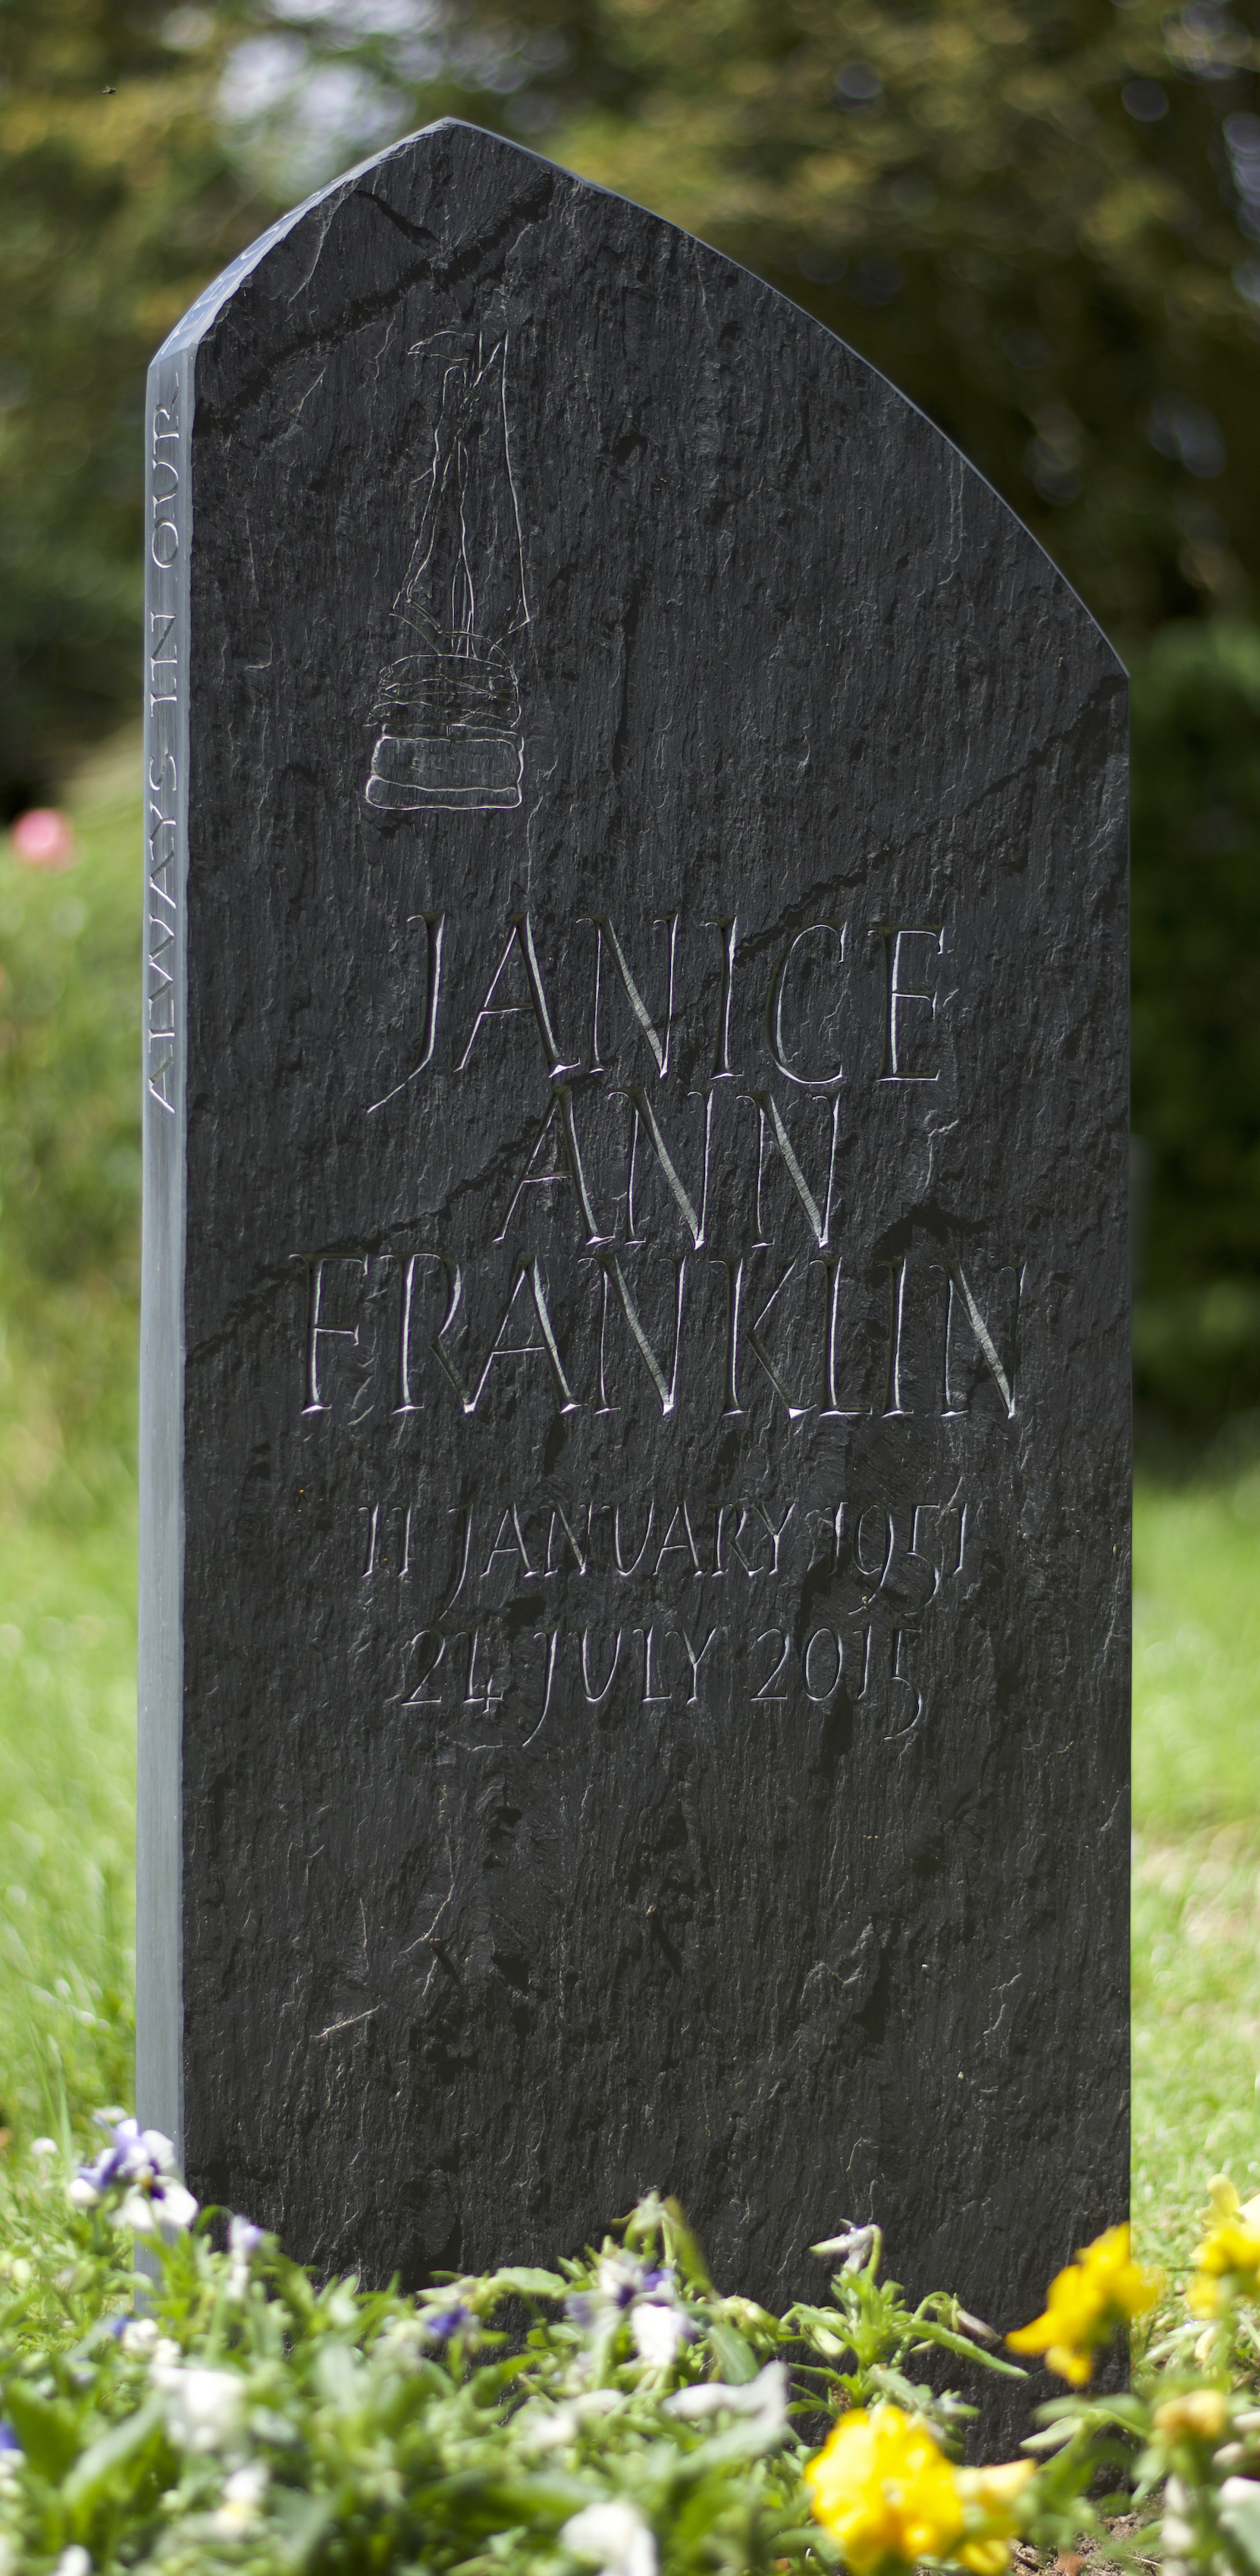 Headstone on riven Welsh slate